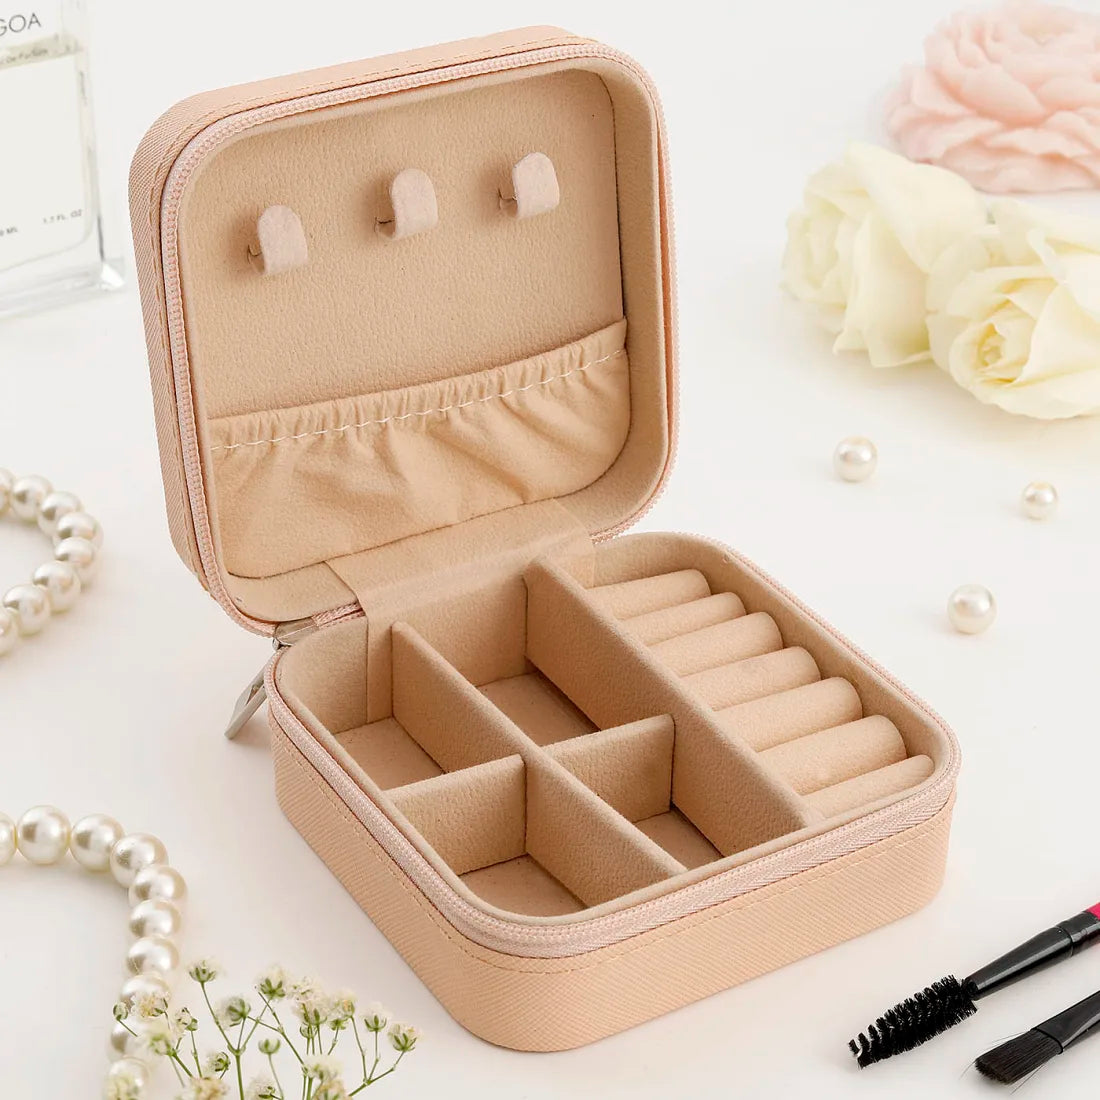 Mini Jewellery Organizer Box